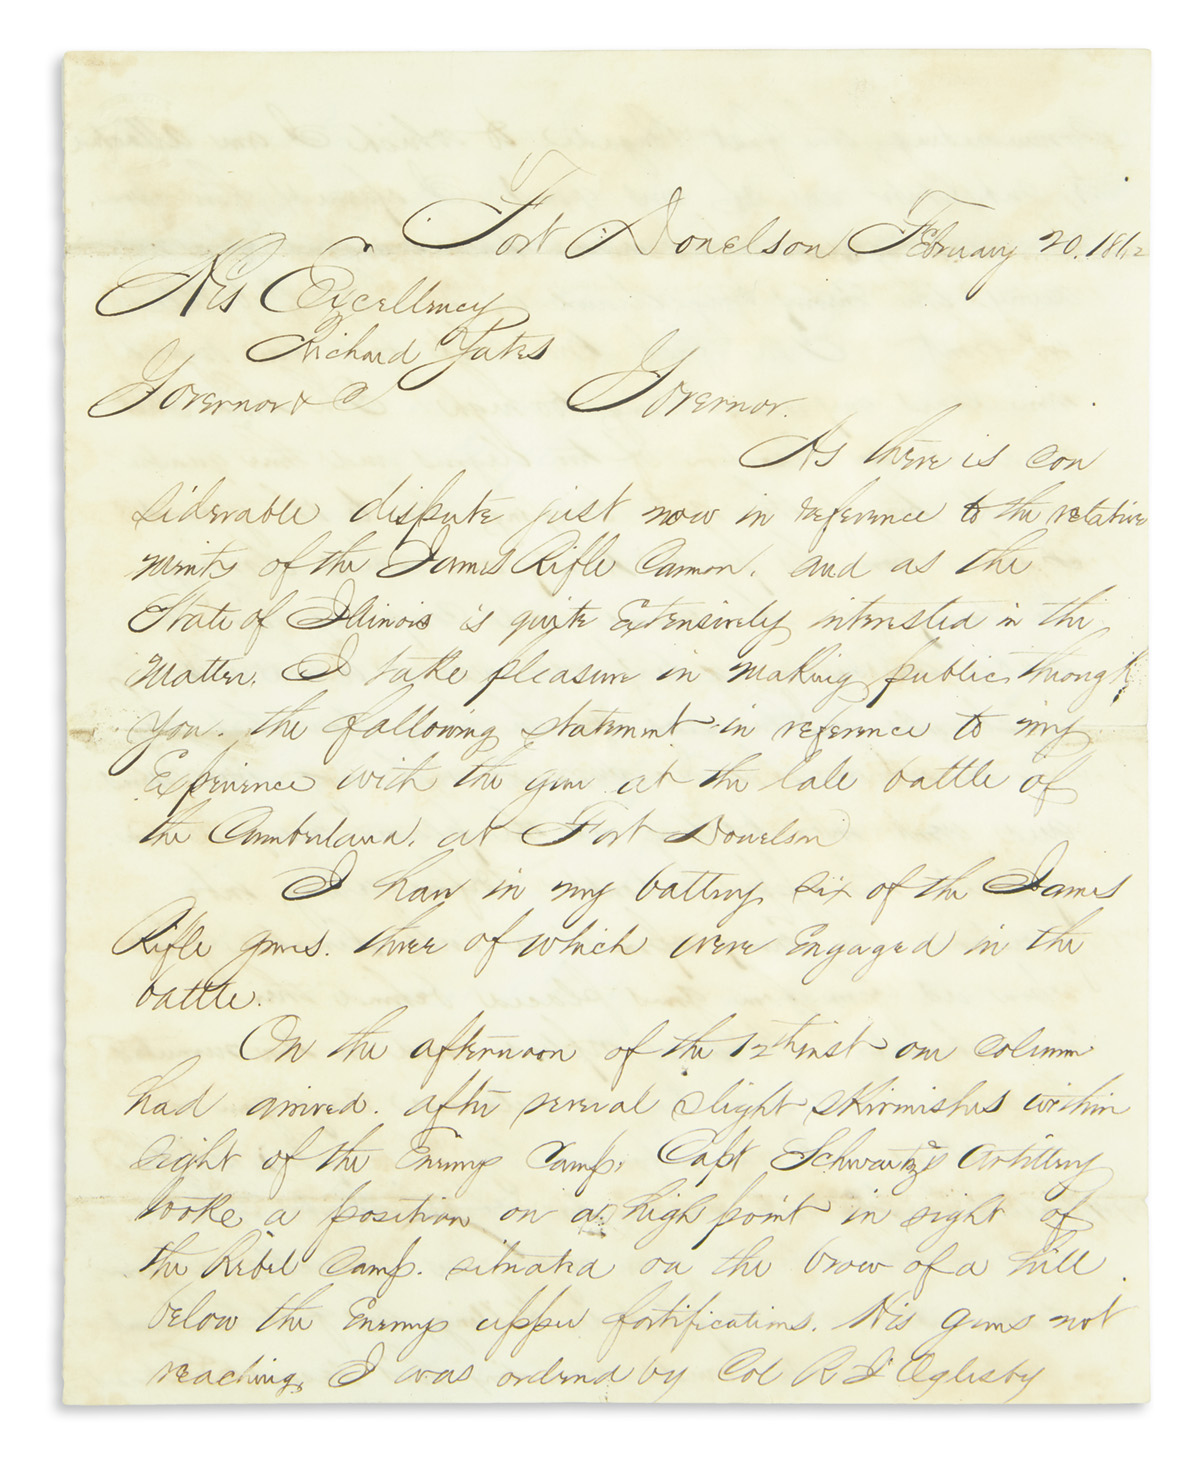 (CIVIL WAR.) Dresser, Jasper M. Artillerymans letter providing a detailed endorsement of the James Rifle cannon.